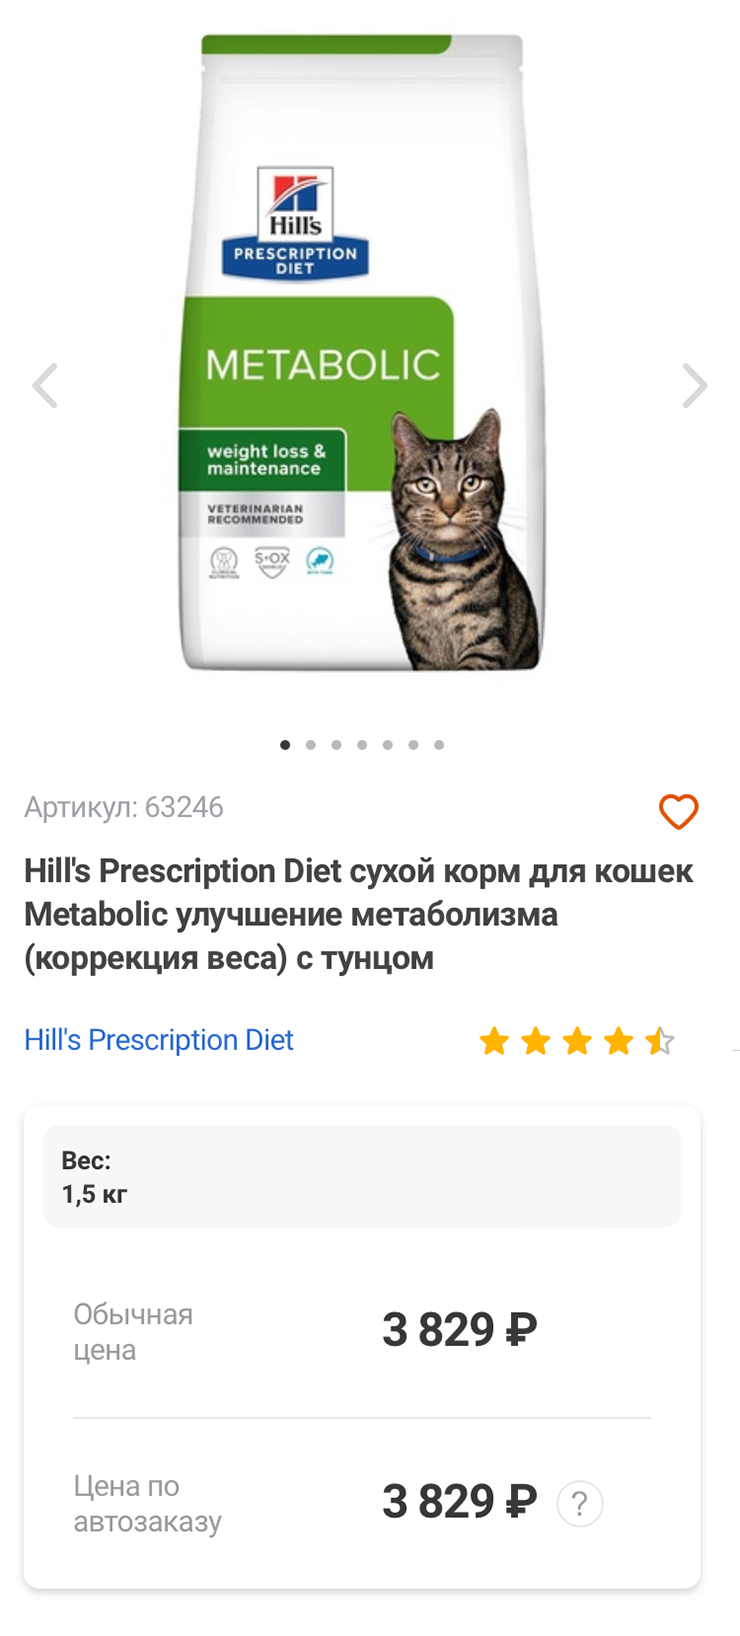 Пример лечебного корма для коррекции веса. Источник: petshop.ru